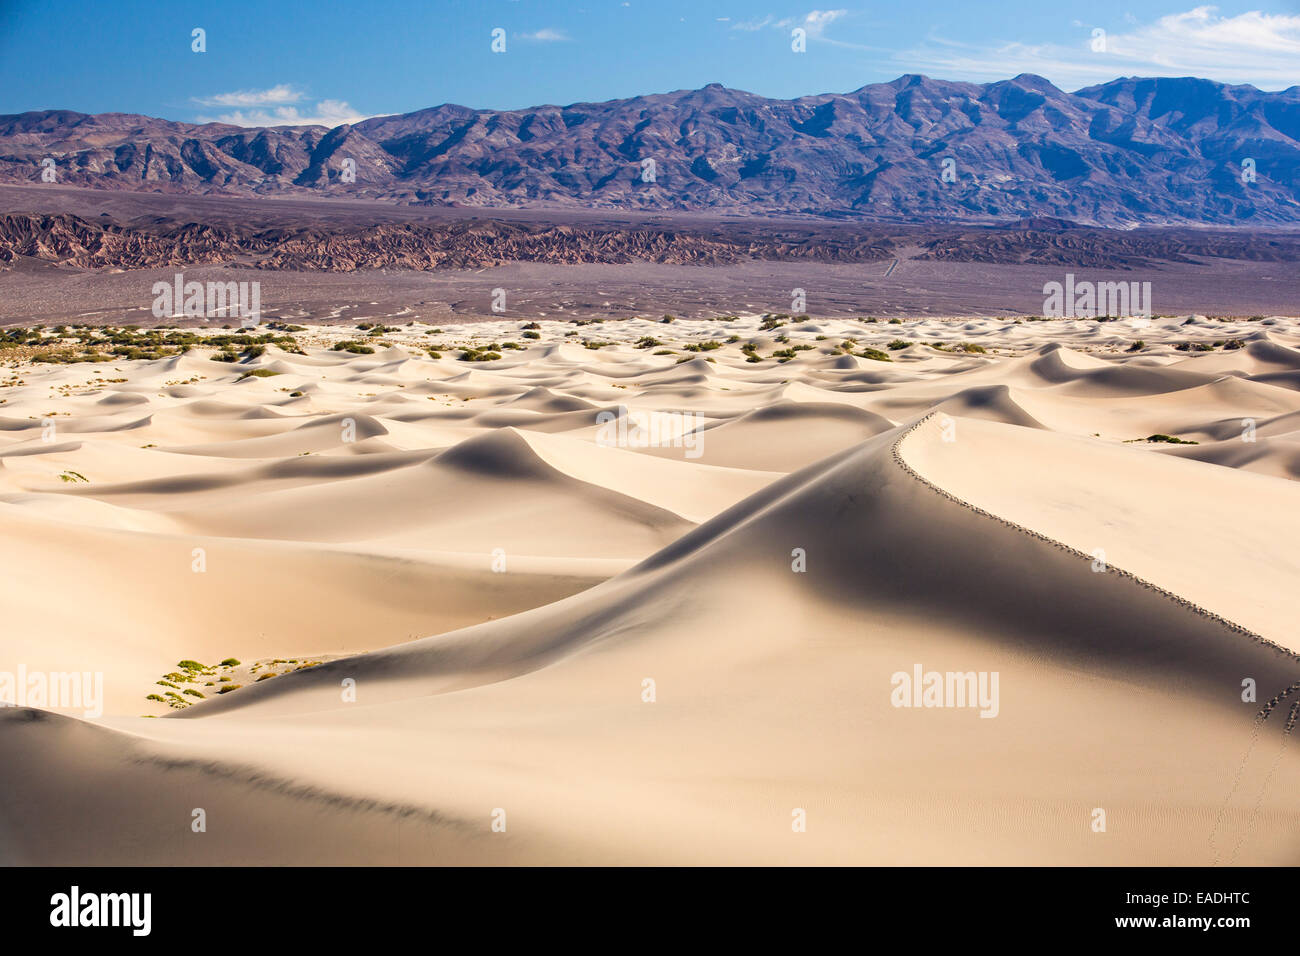 Die Mesquite flache Sanddünen im Death Valley, die den niedrigsten, heißesten und trockensten Ort in den USA, mit einer durchschnittlichen jährlichen Niederschlagsmenge von etwa 2 Zoll einige Jahre ist, die es nicht überhaupt keinen Regen erhält. Stockfoto